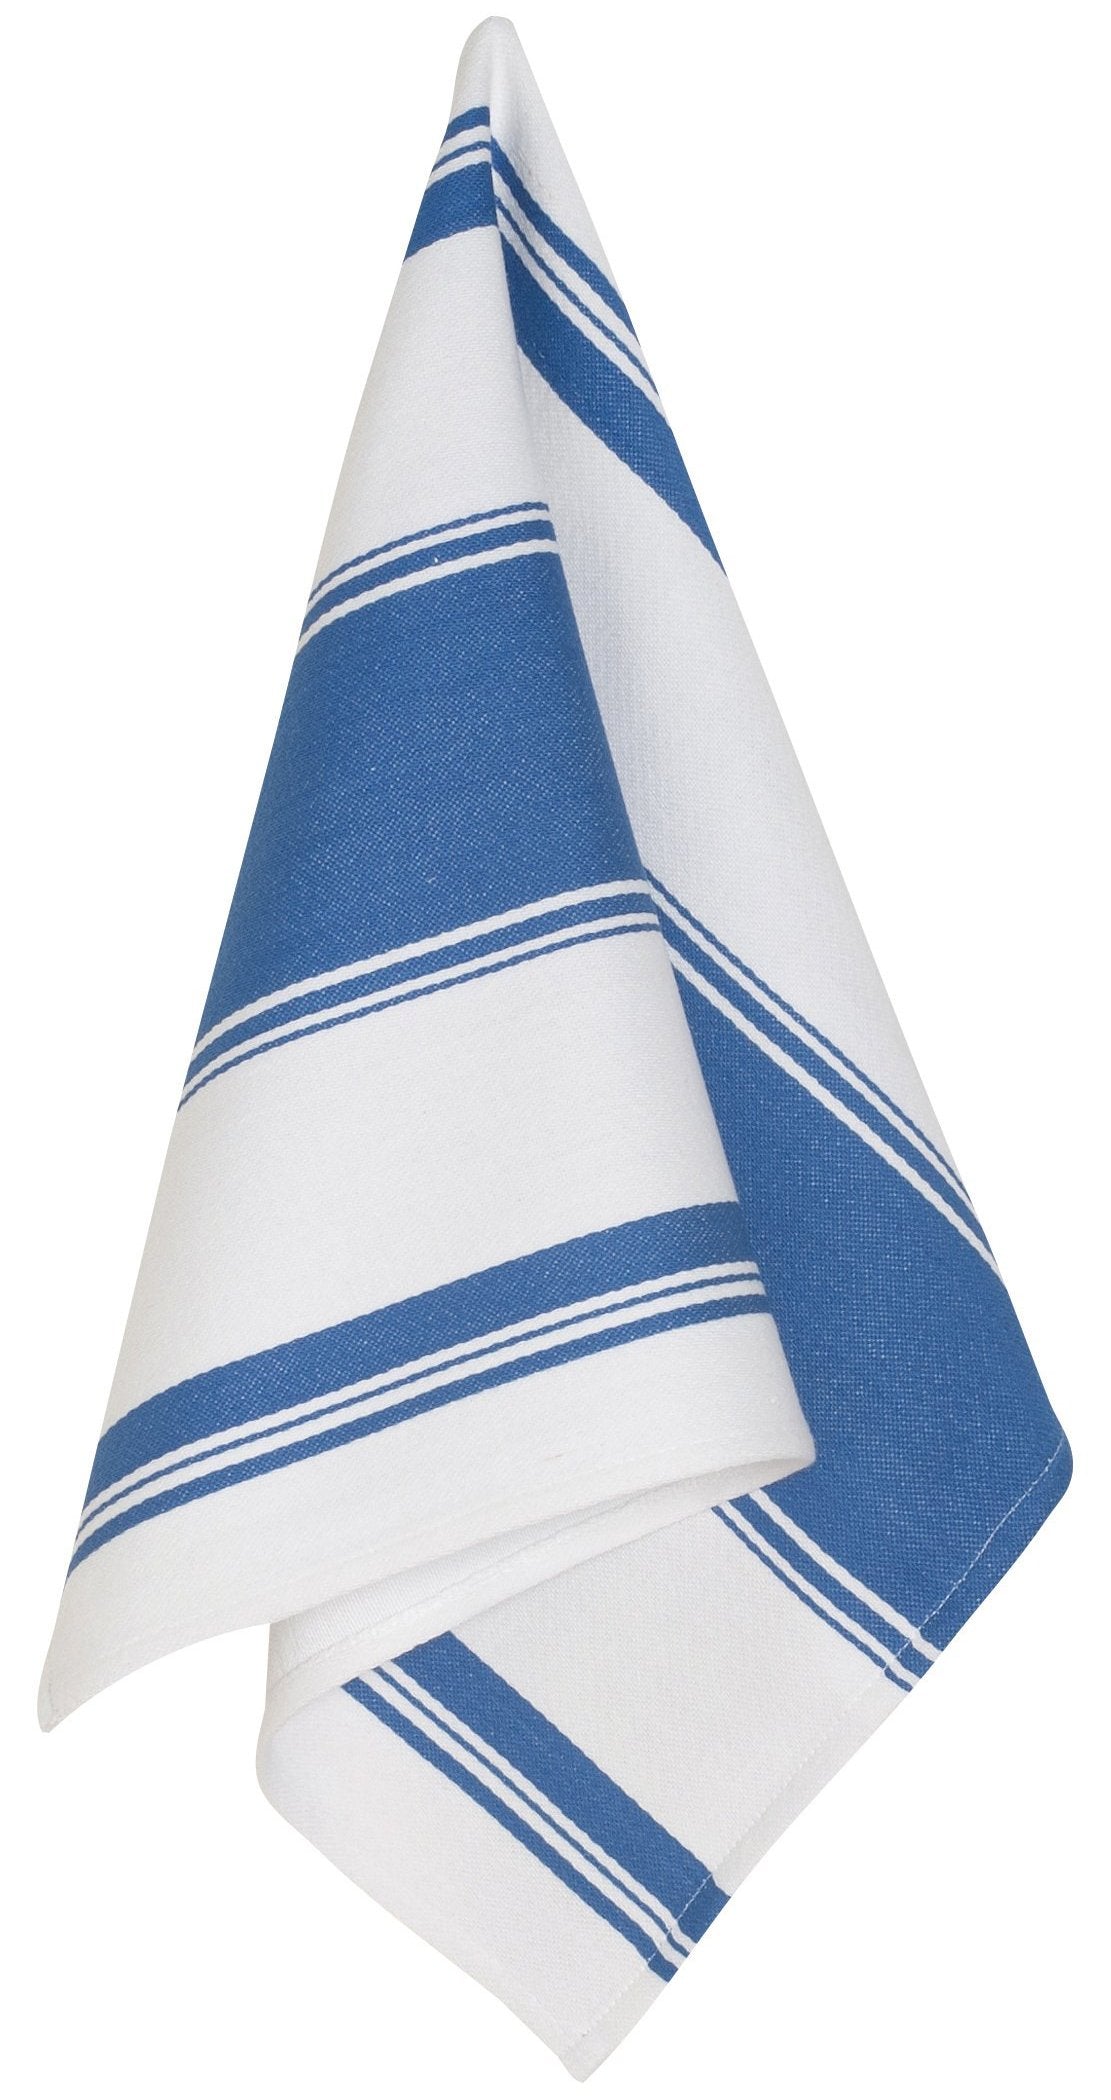 https://wildcottonlinens.com/cdn/shop/products/Dish-Towel-Cotton-Striped-Royal-Blue_1800x.jpg?v=1549905402